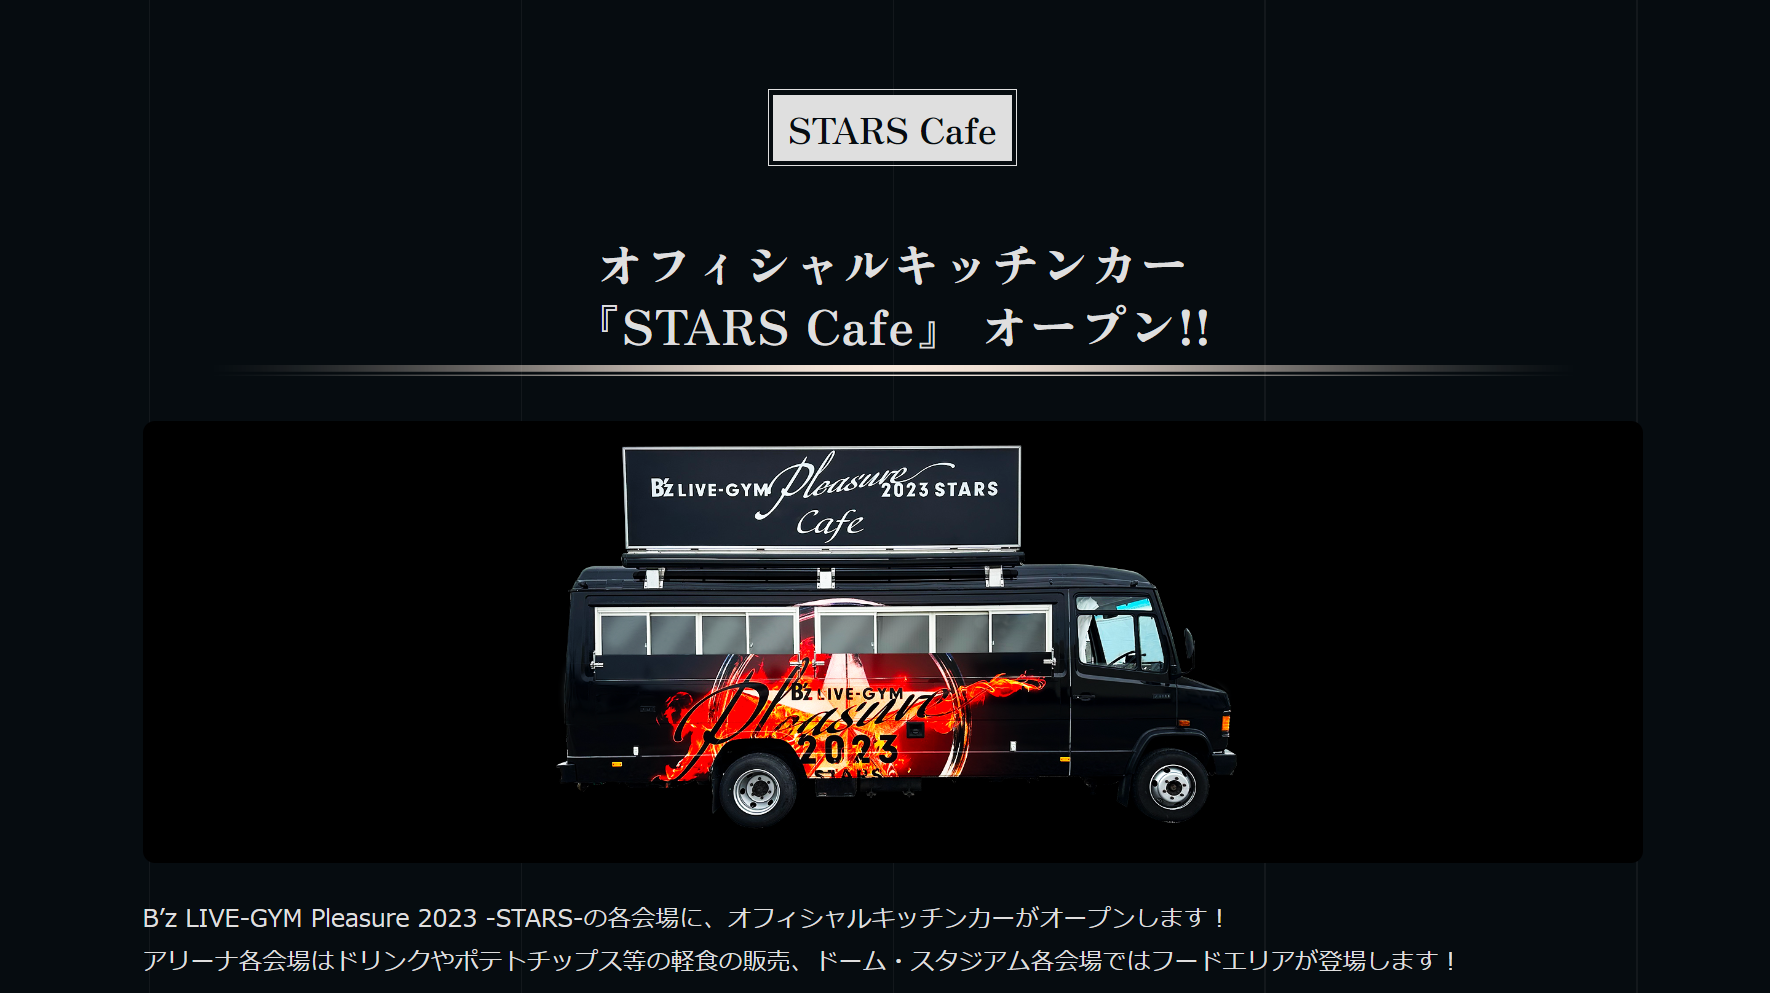 B'zのオフィシャルキッチンカー『STARS Cafe』のイメージ画像のキャプチャ